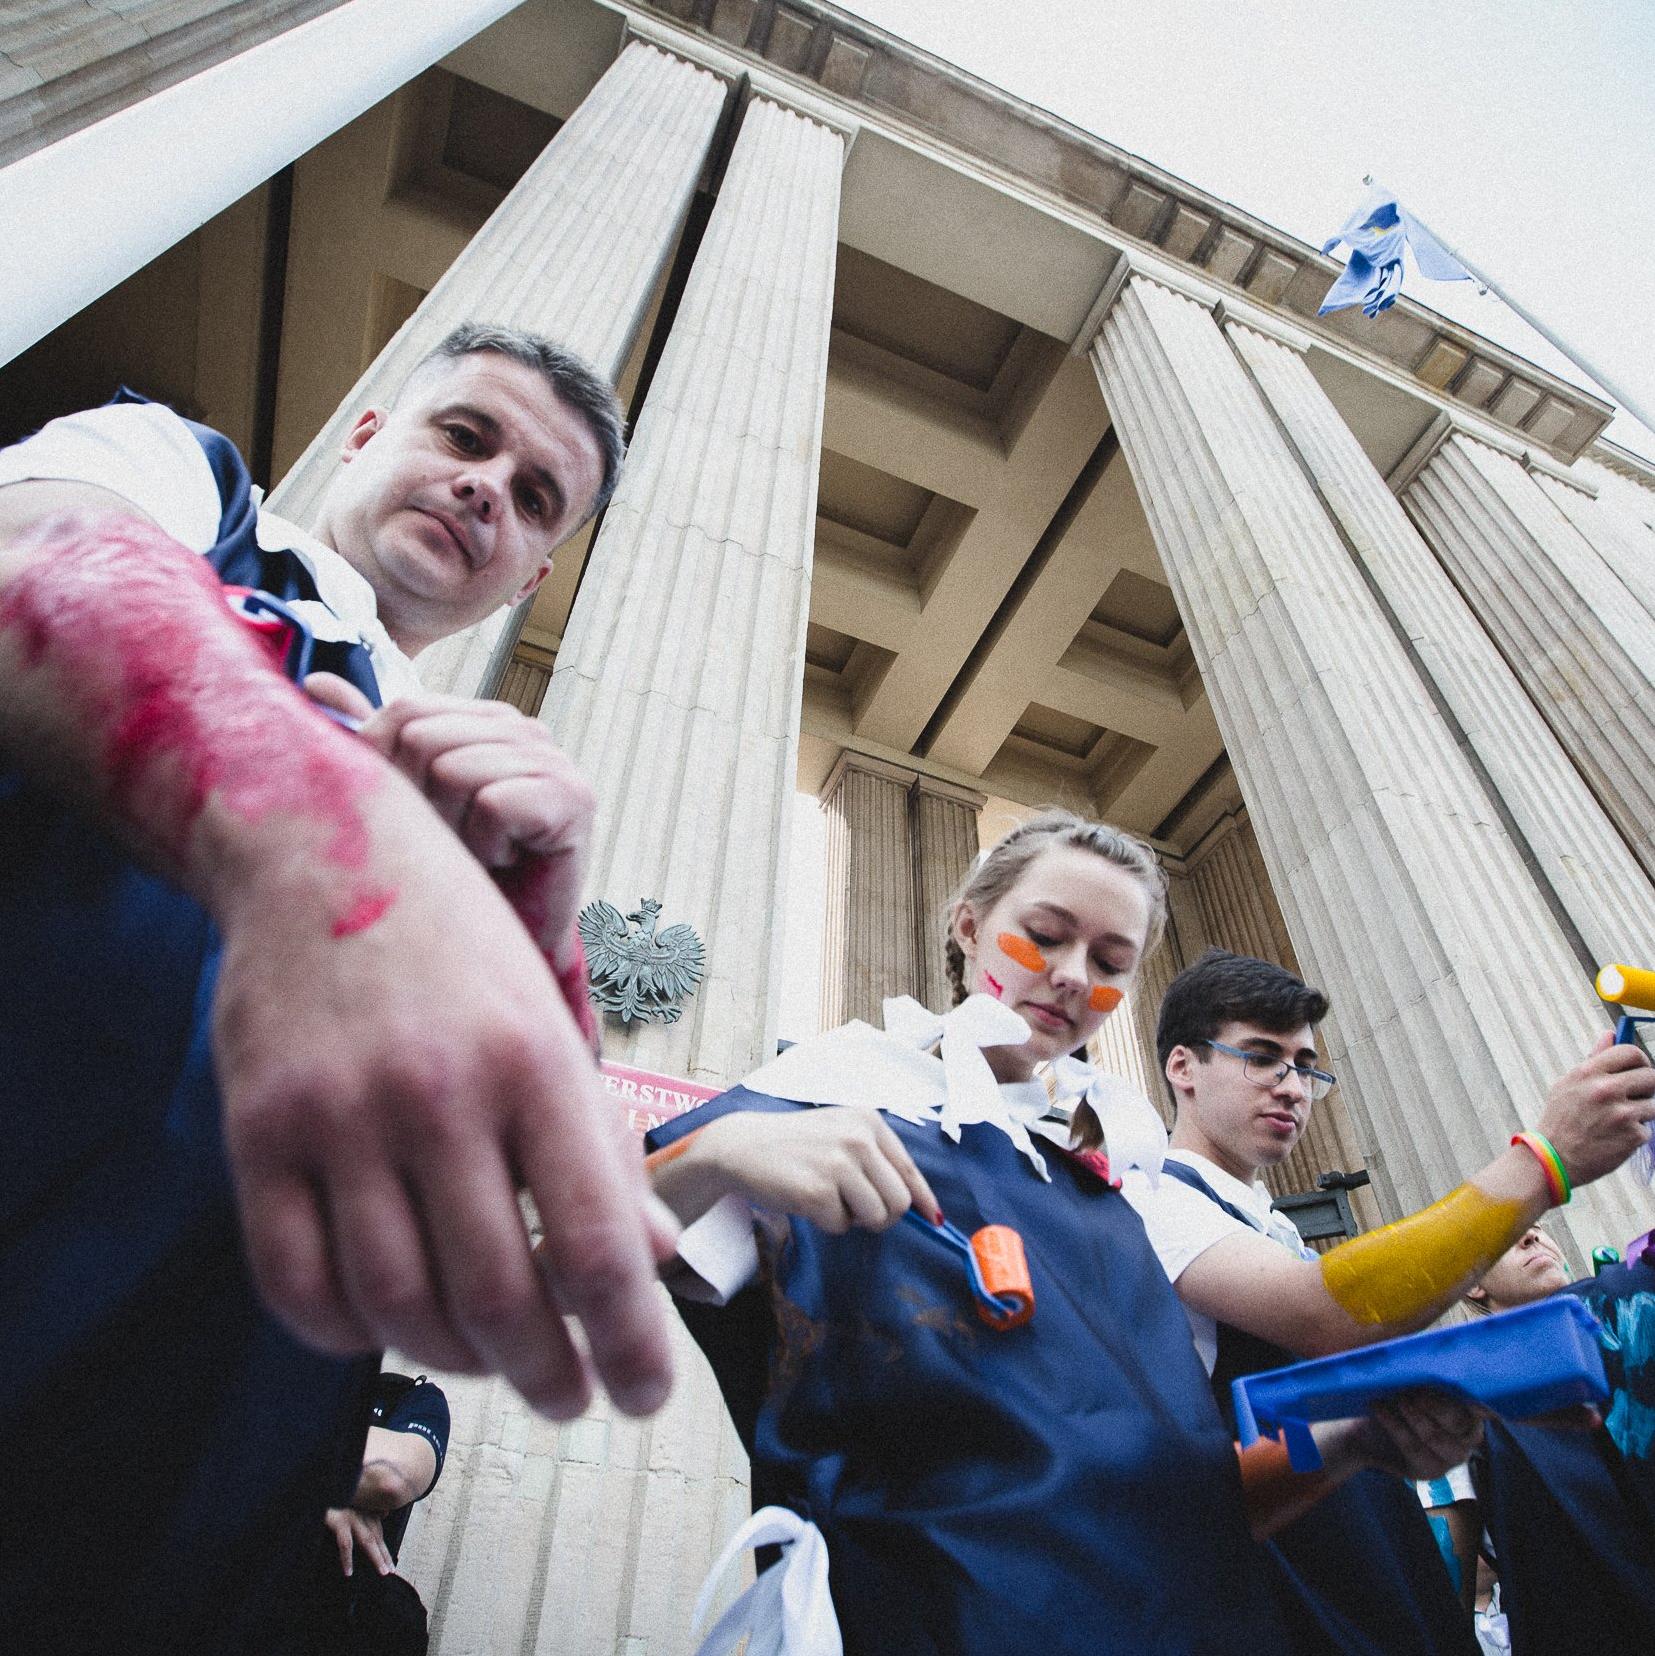 Warszawa, 19.07.2021. Aktywiści i aktywistki protestowali przed siedzibą Ministerwsta Edukacji i Nauki. Pomalowali się tęczowymi farbami, zrobili laurkę dla Czarnka